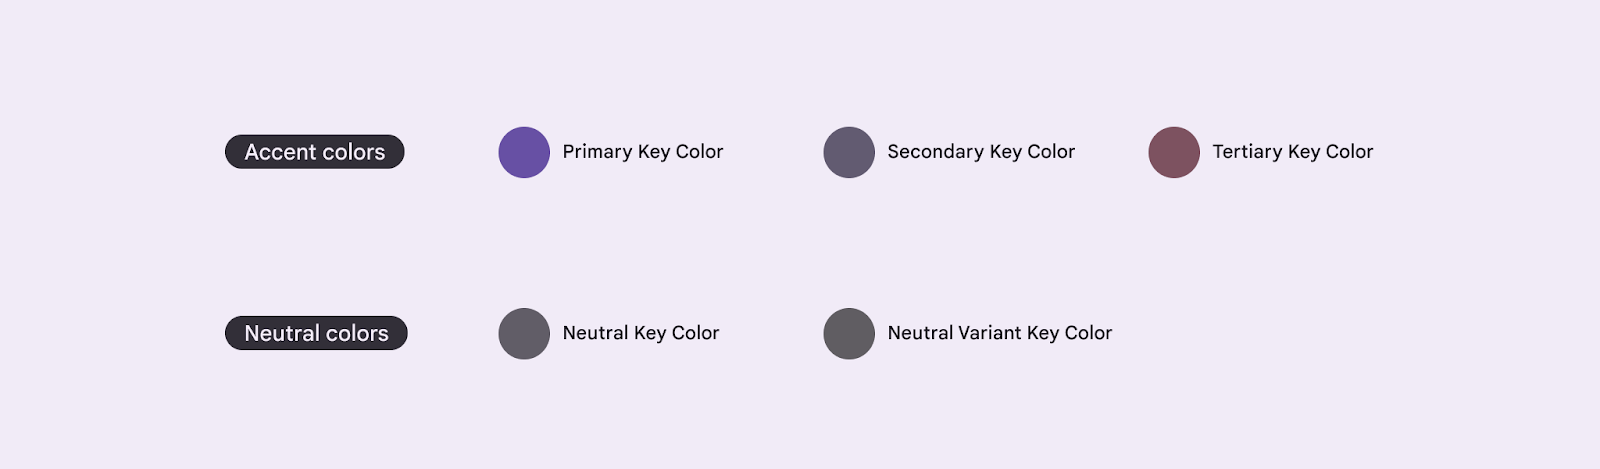 M3 teması oluşturmak için beş temel temel renk.